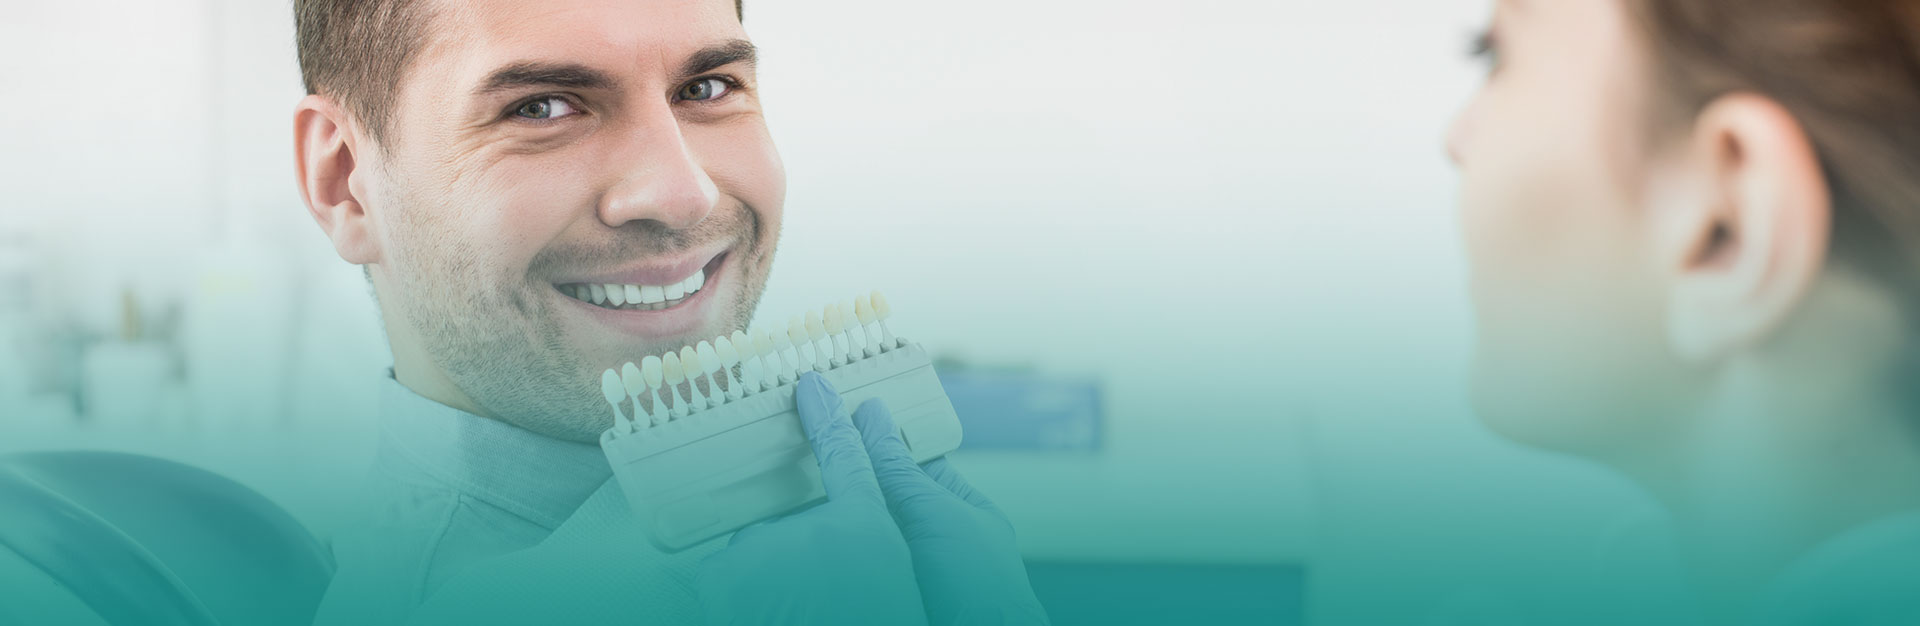 A man is smiling after having dental veneers